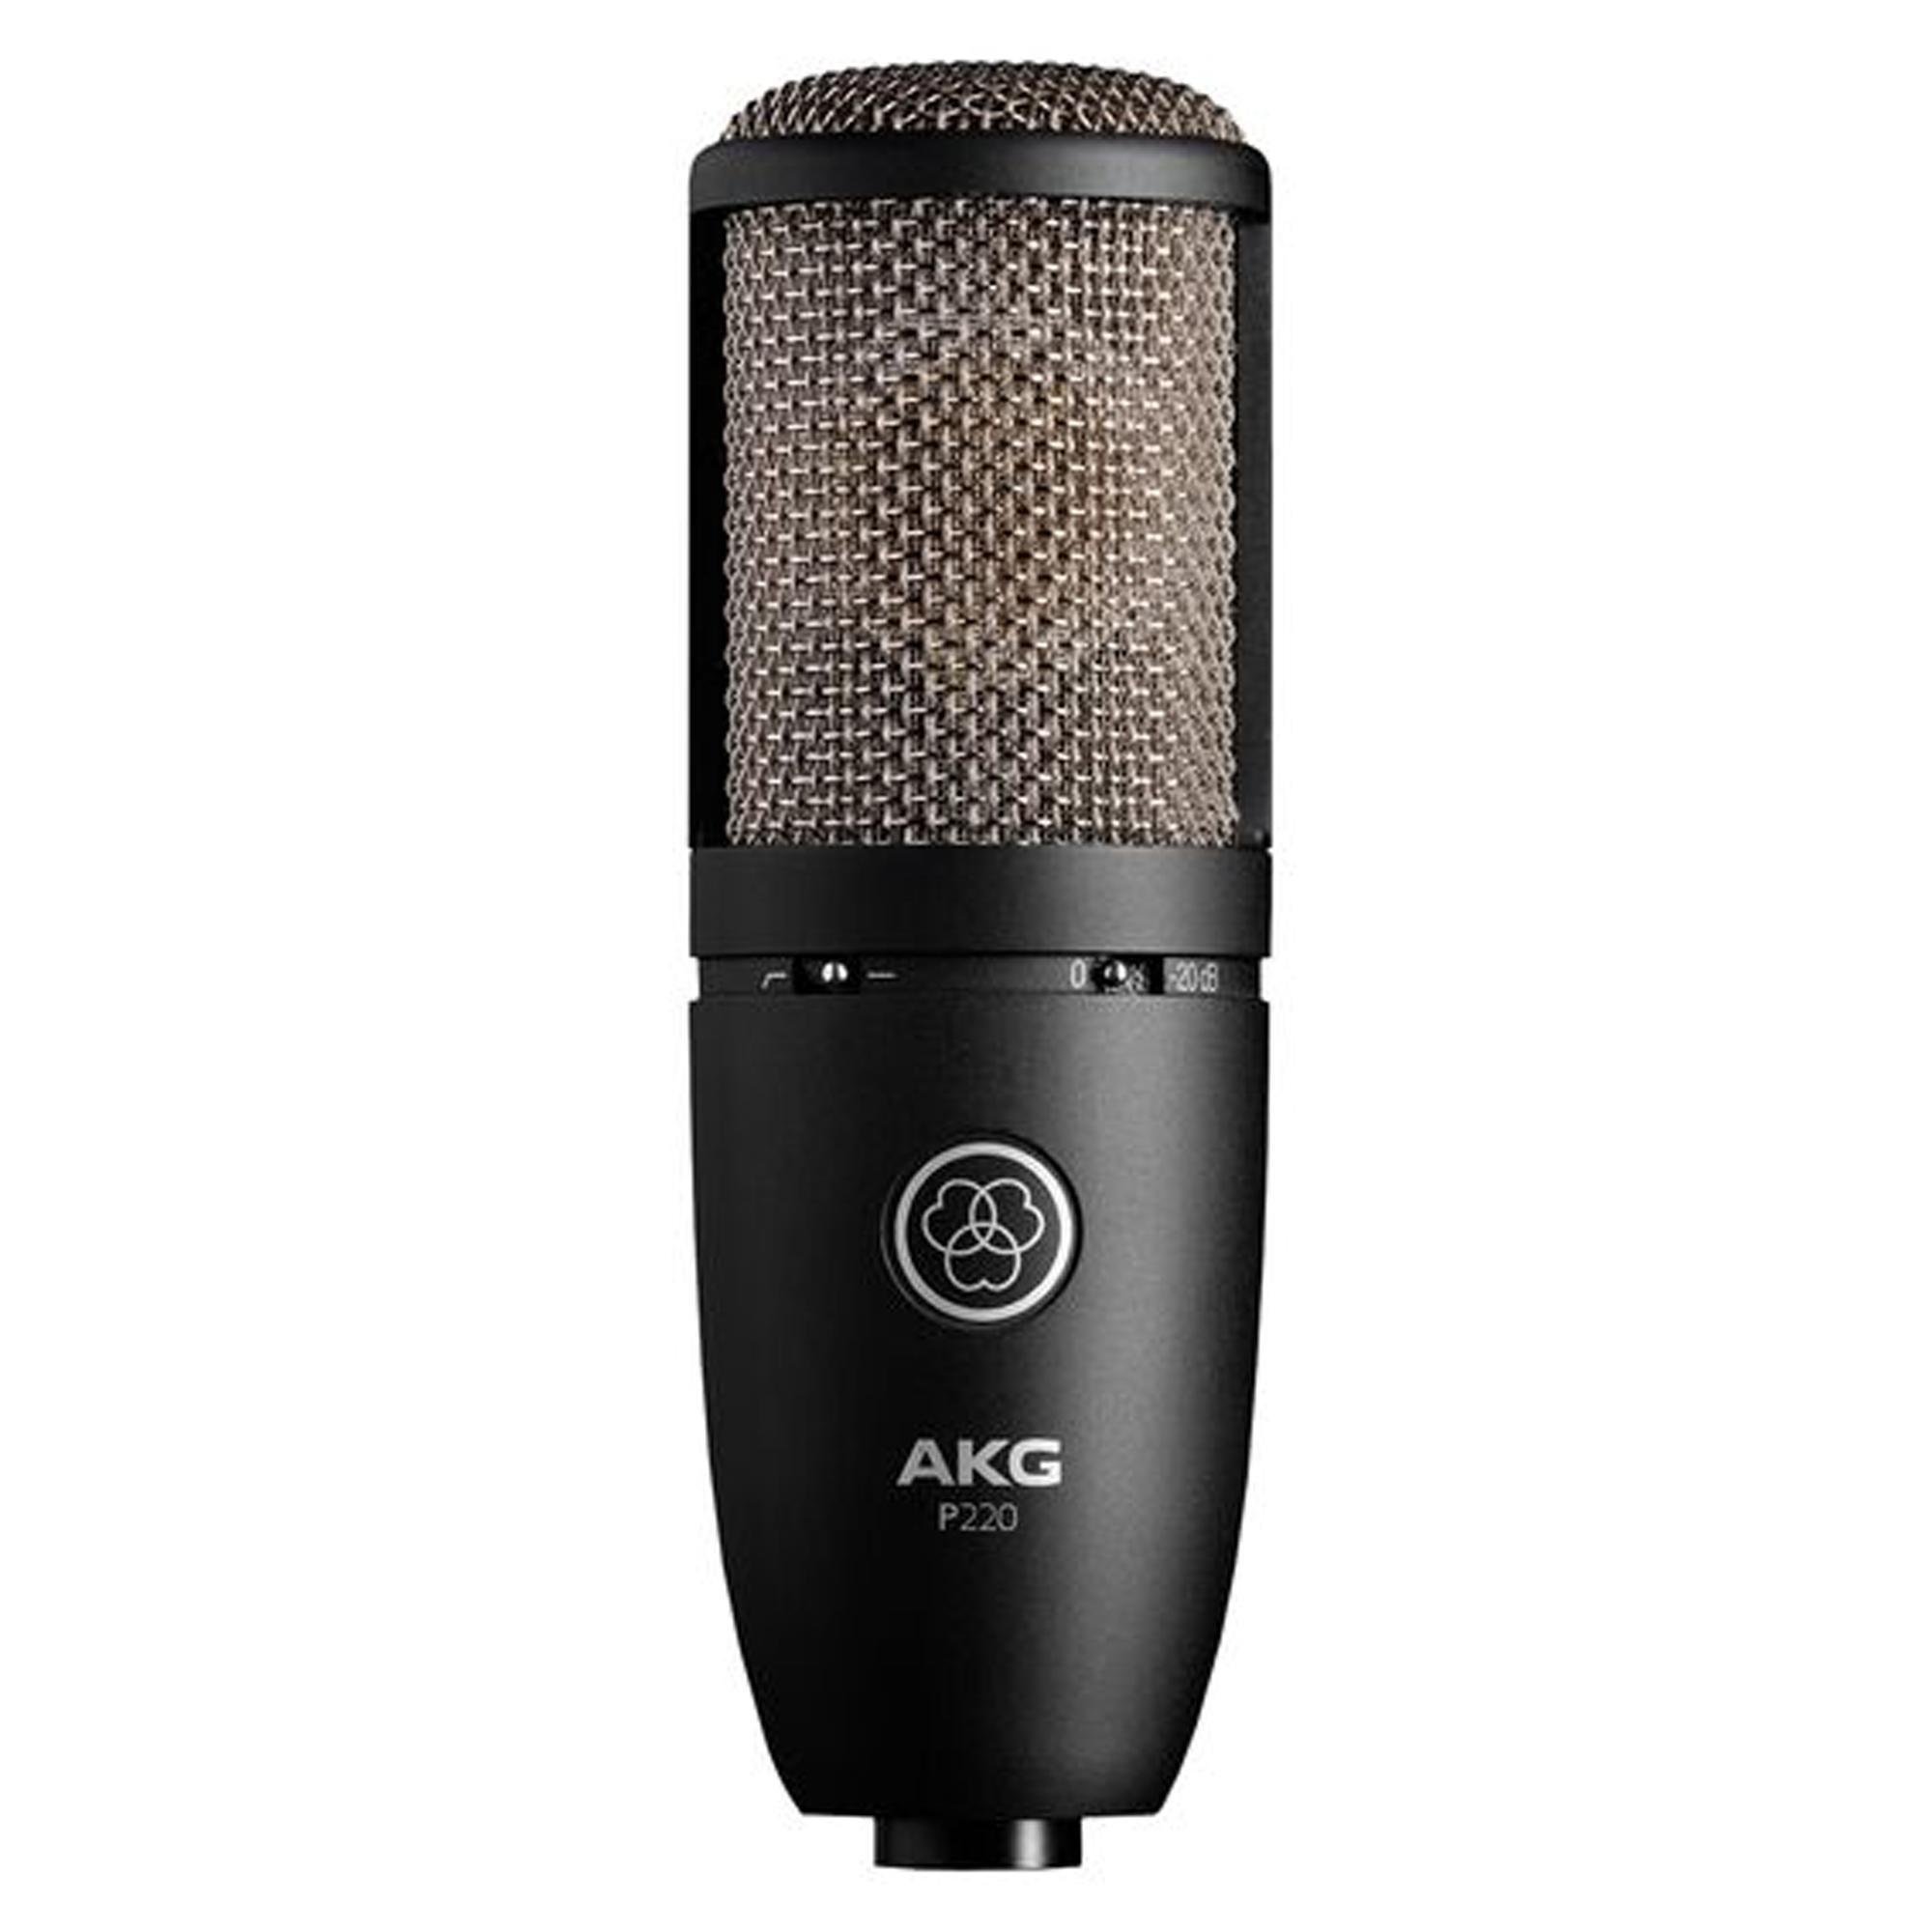 Microfone Perception 220 Preto AKG